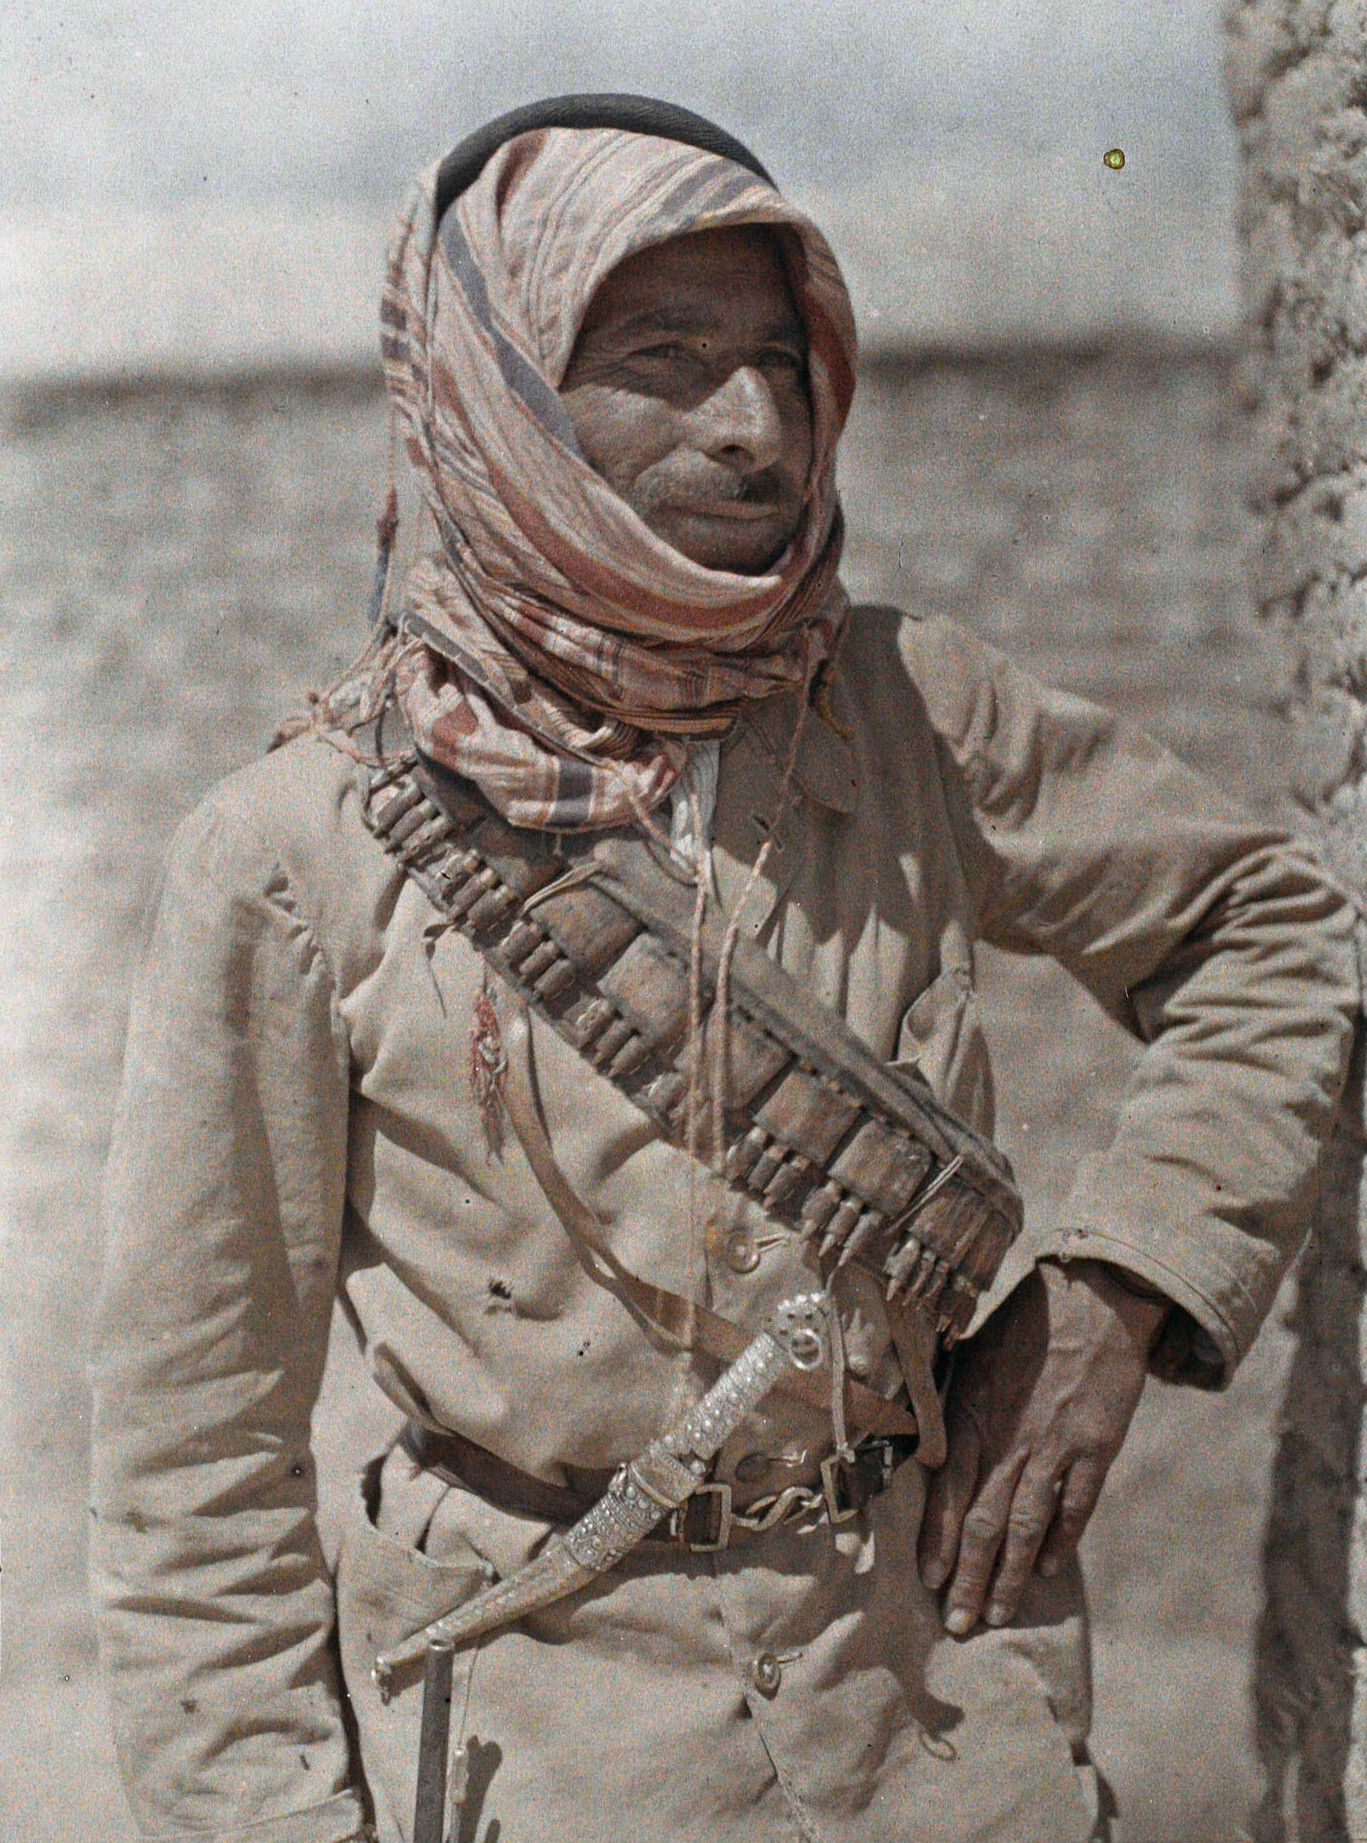 Акаба, Аравия (Иордания), капитан Пизани, 1918 год, автор Пол Кастельно (автохром)